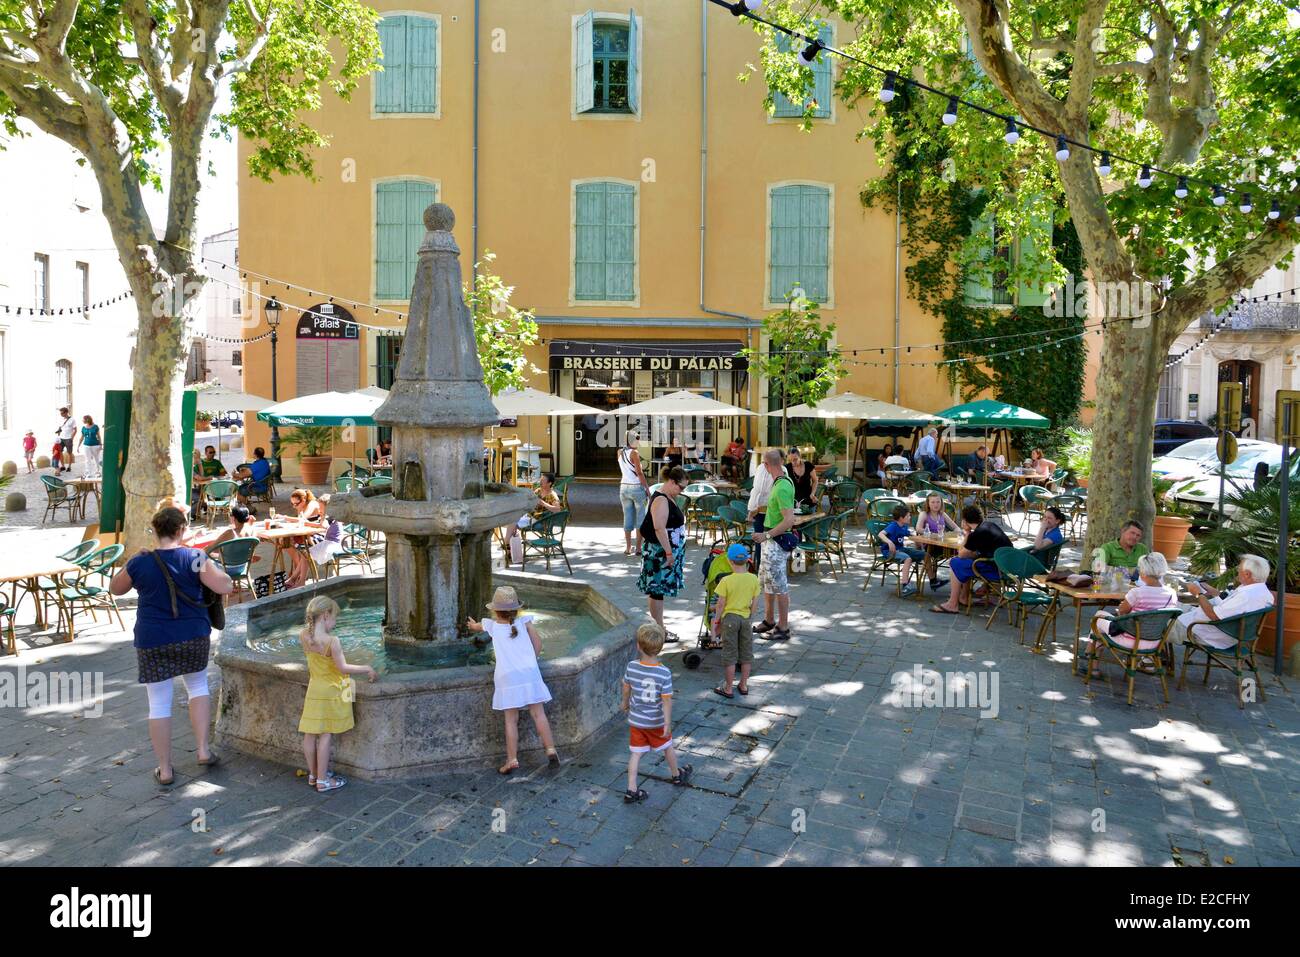 La France, l'Hérault, Béziers, place de la Révolution, terrasses de café autour d'une fontaine en pierre à l'ombre des platanes Banque D'Images